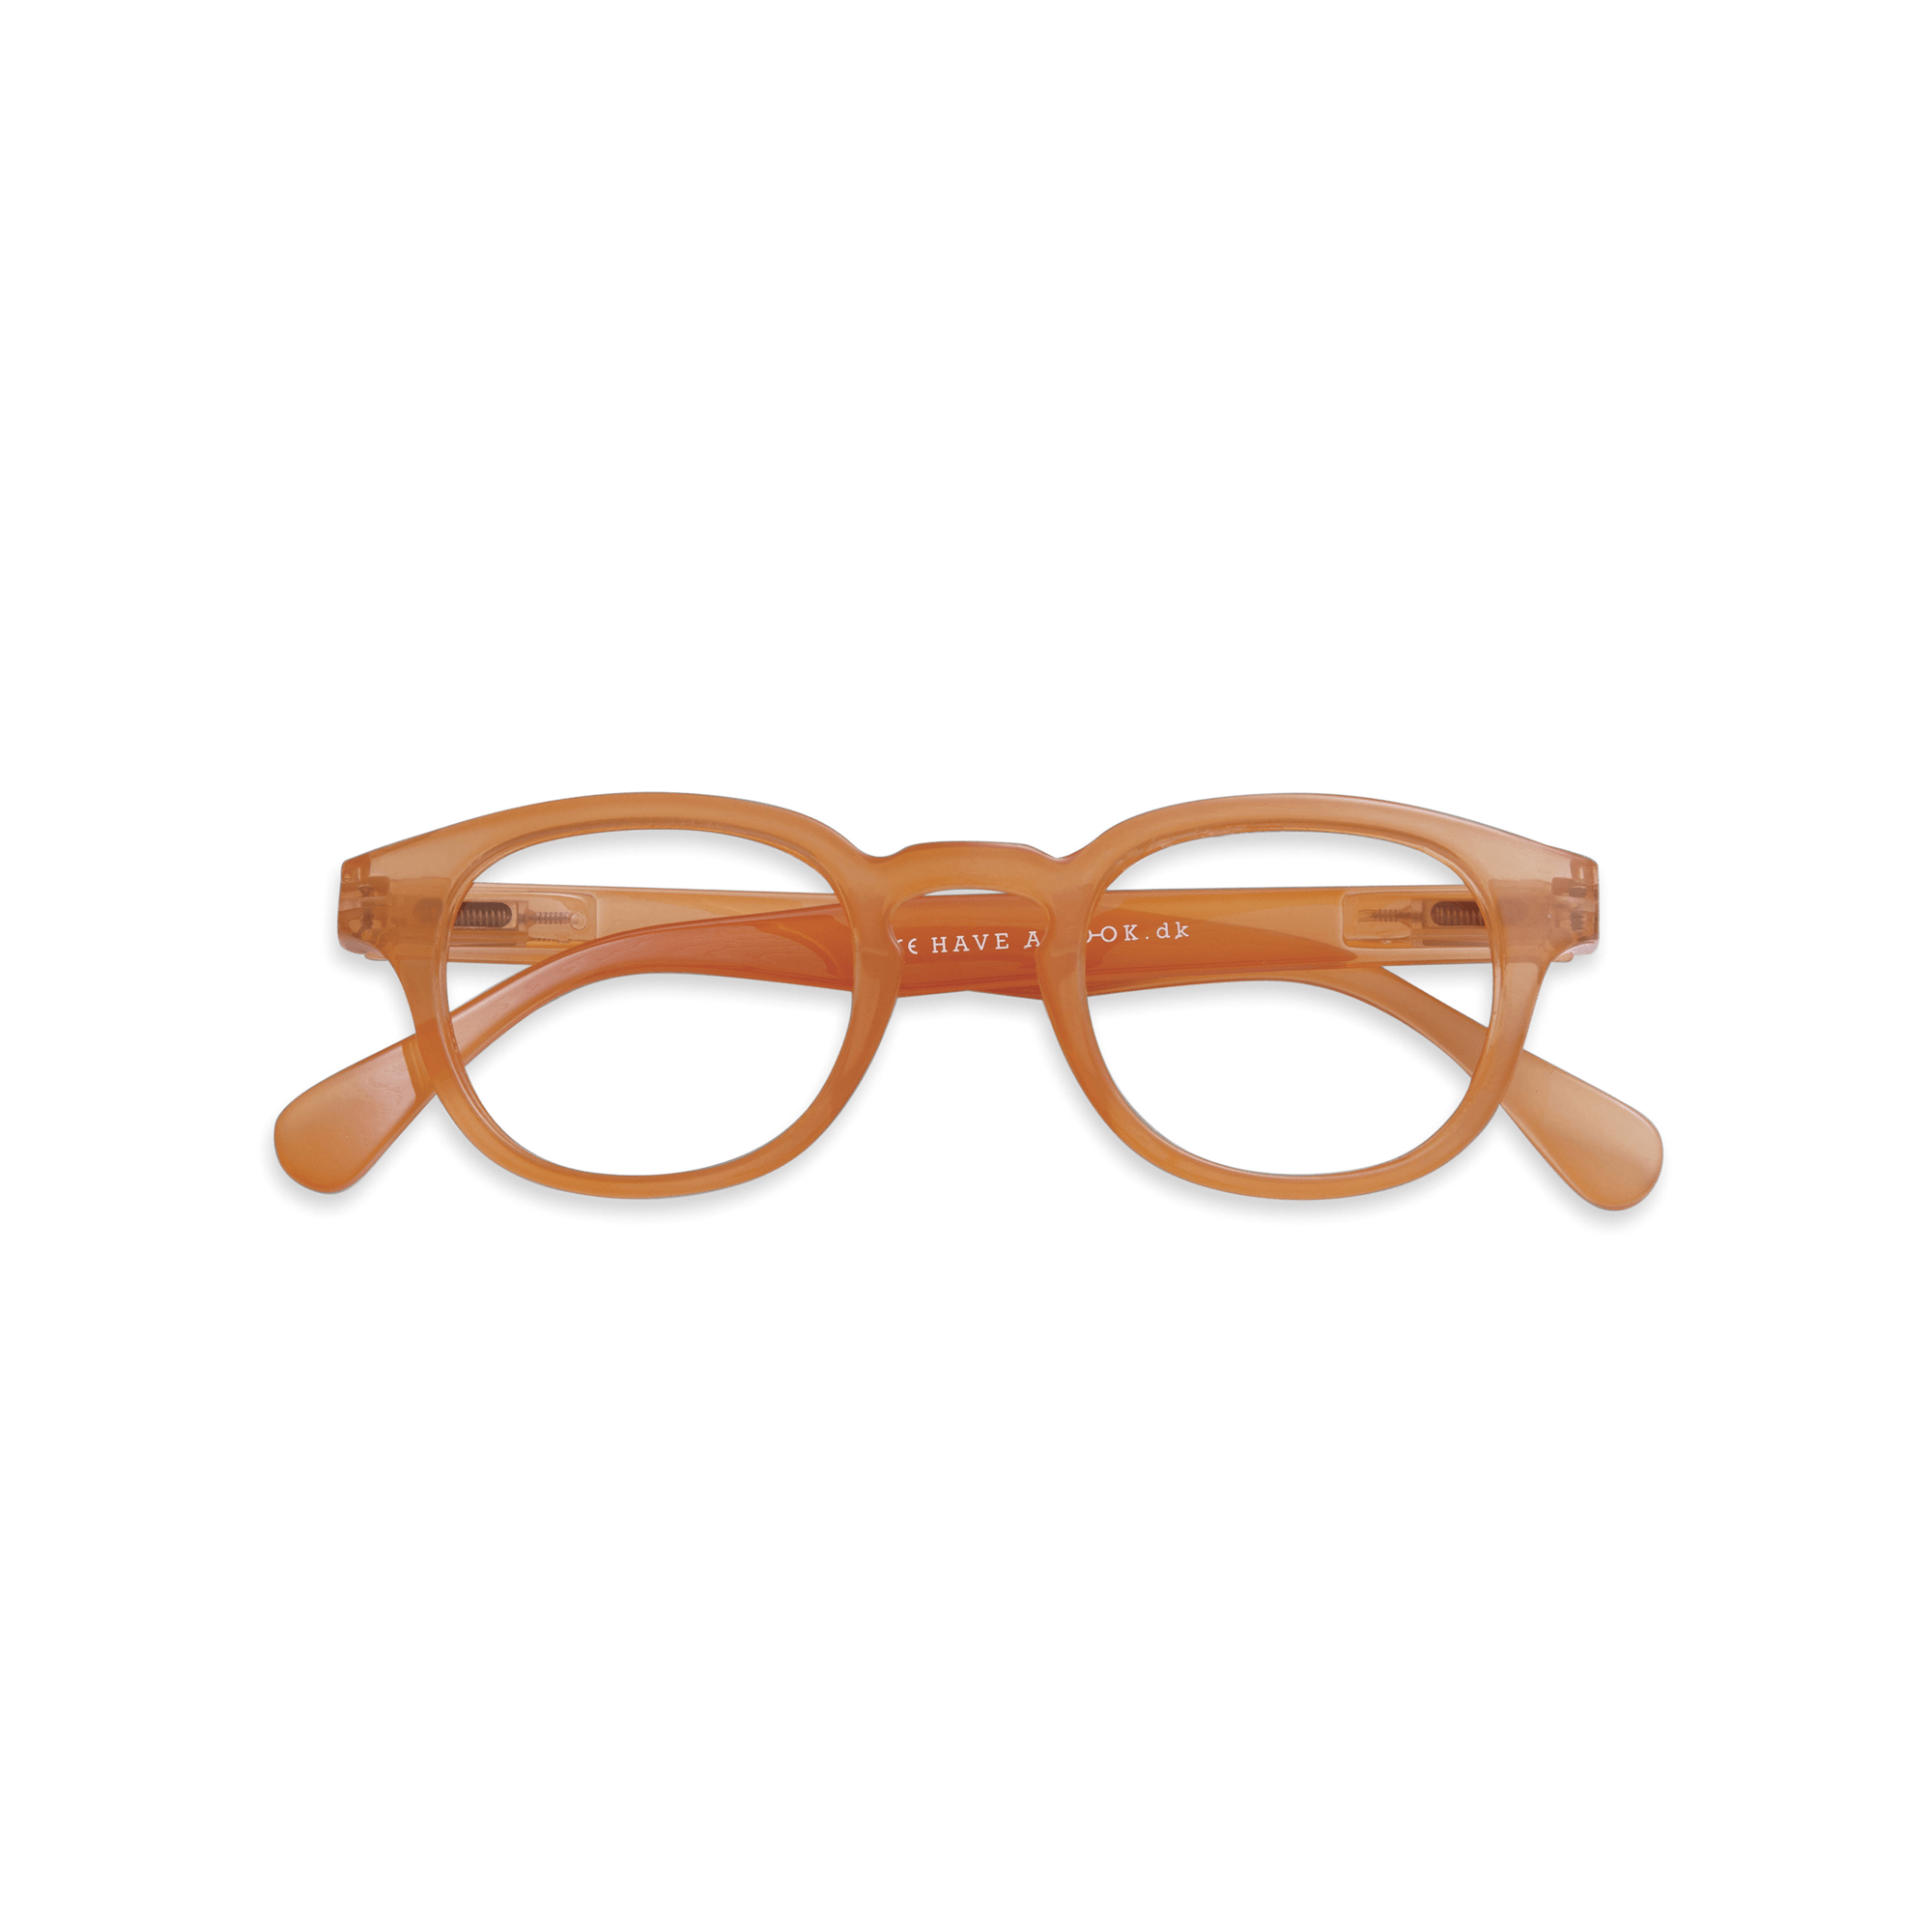 Fernbrillen Type C - orange aus Have A Look